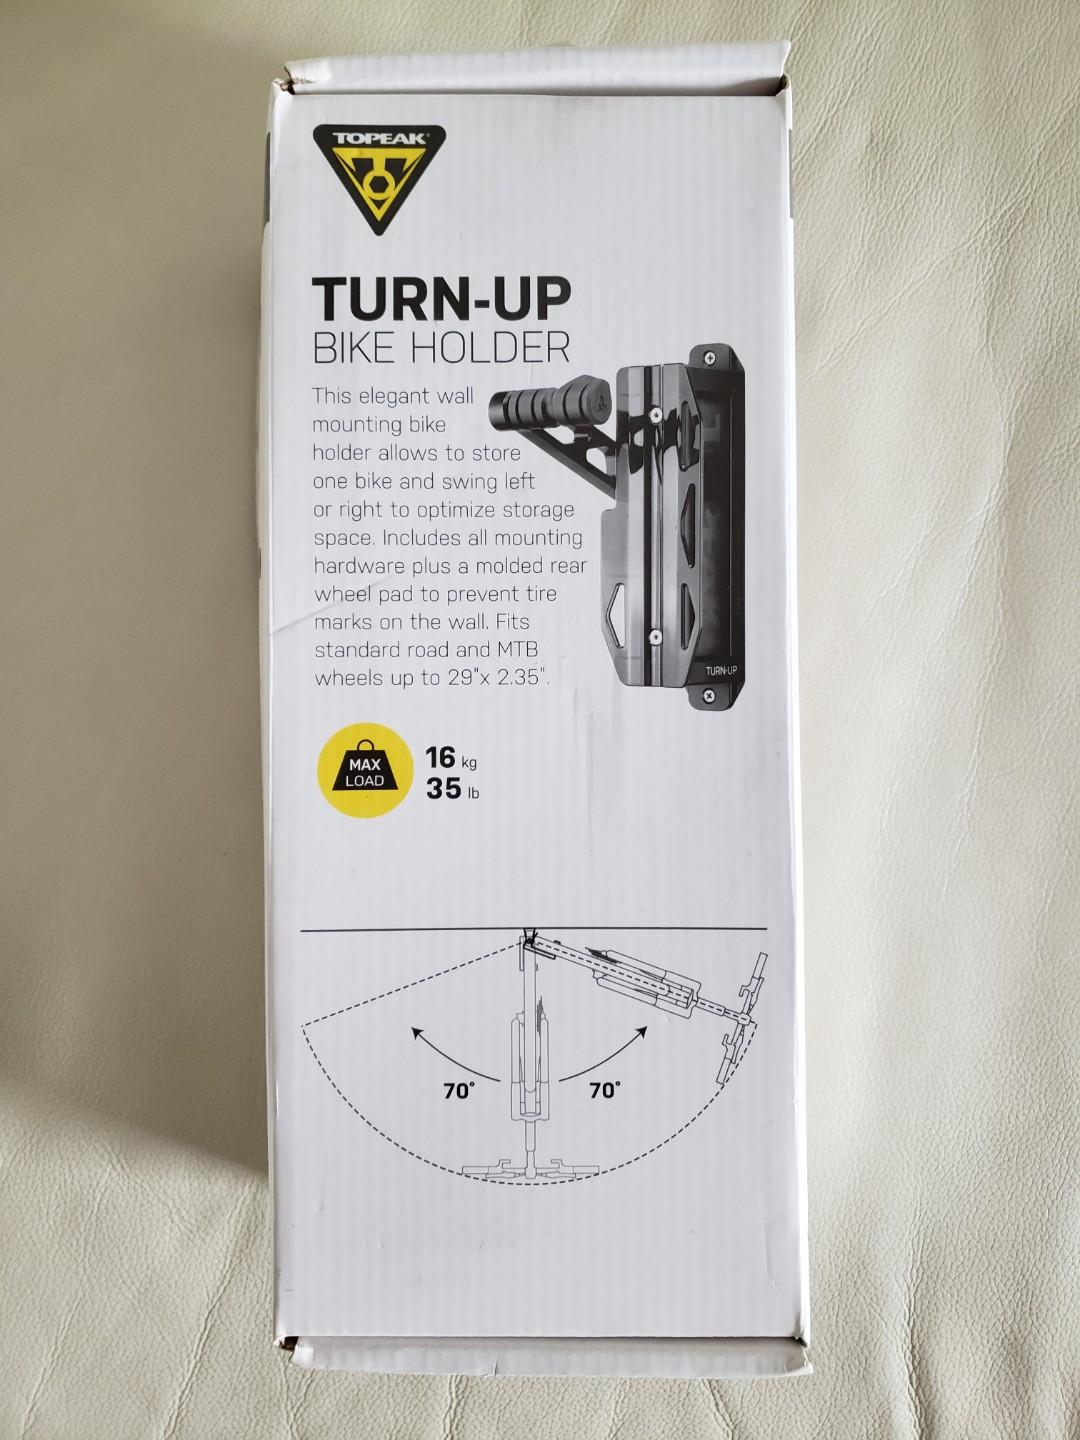 topeak turnup bike holder